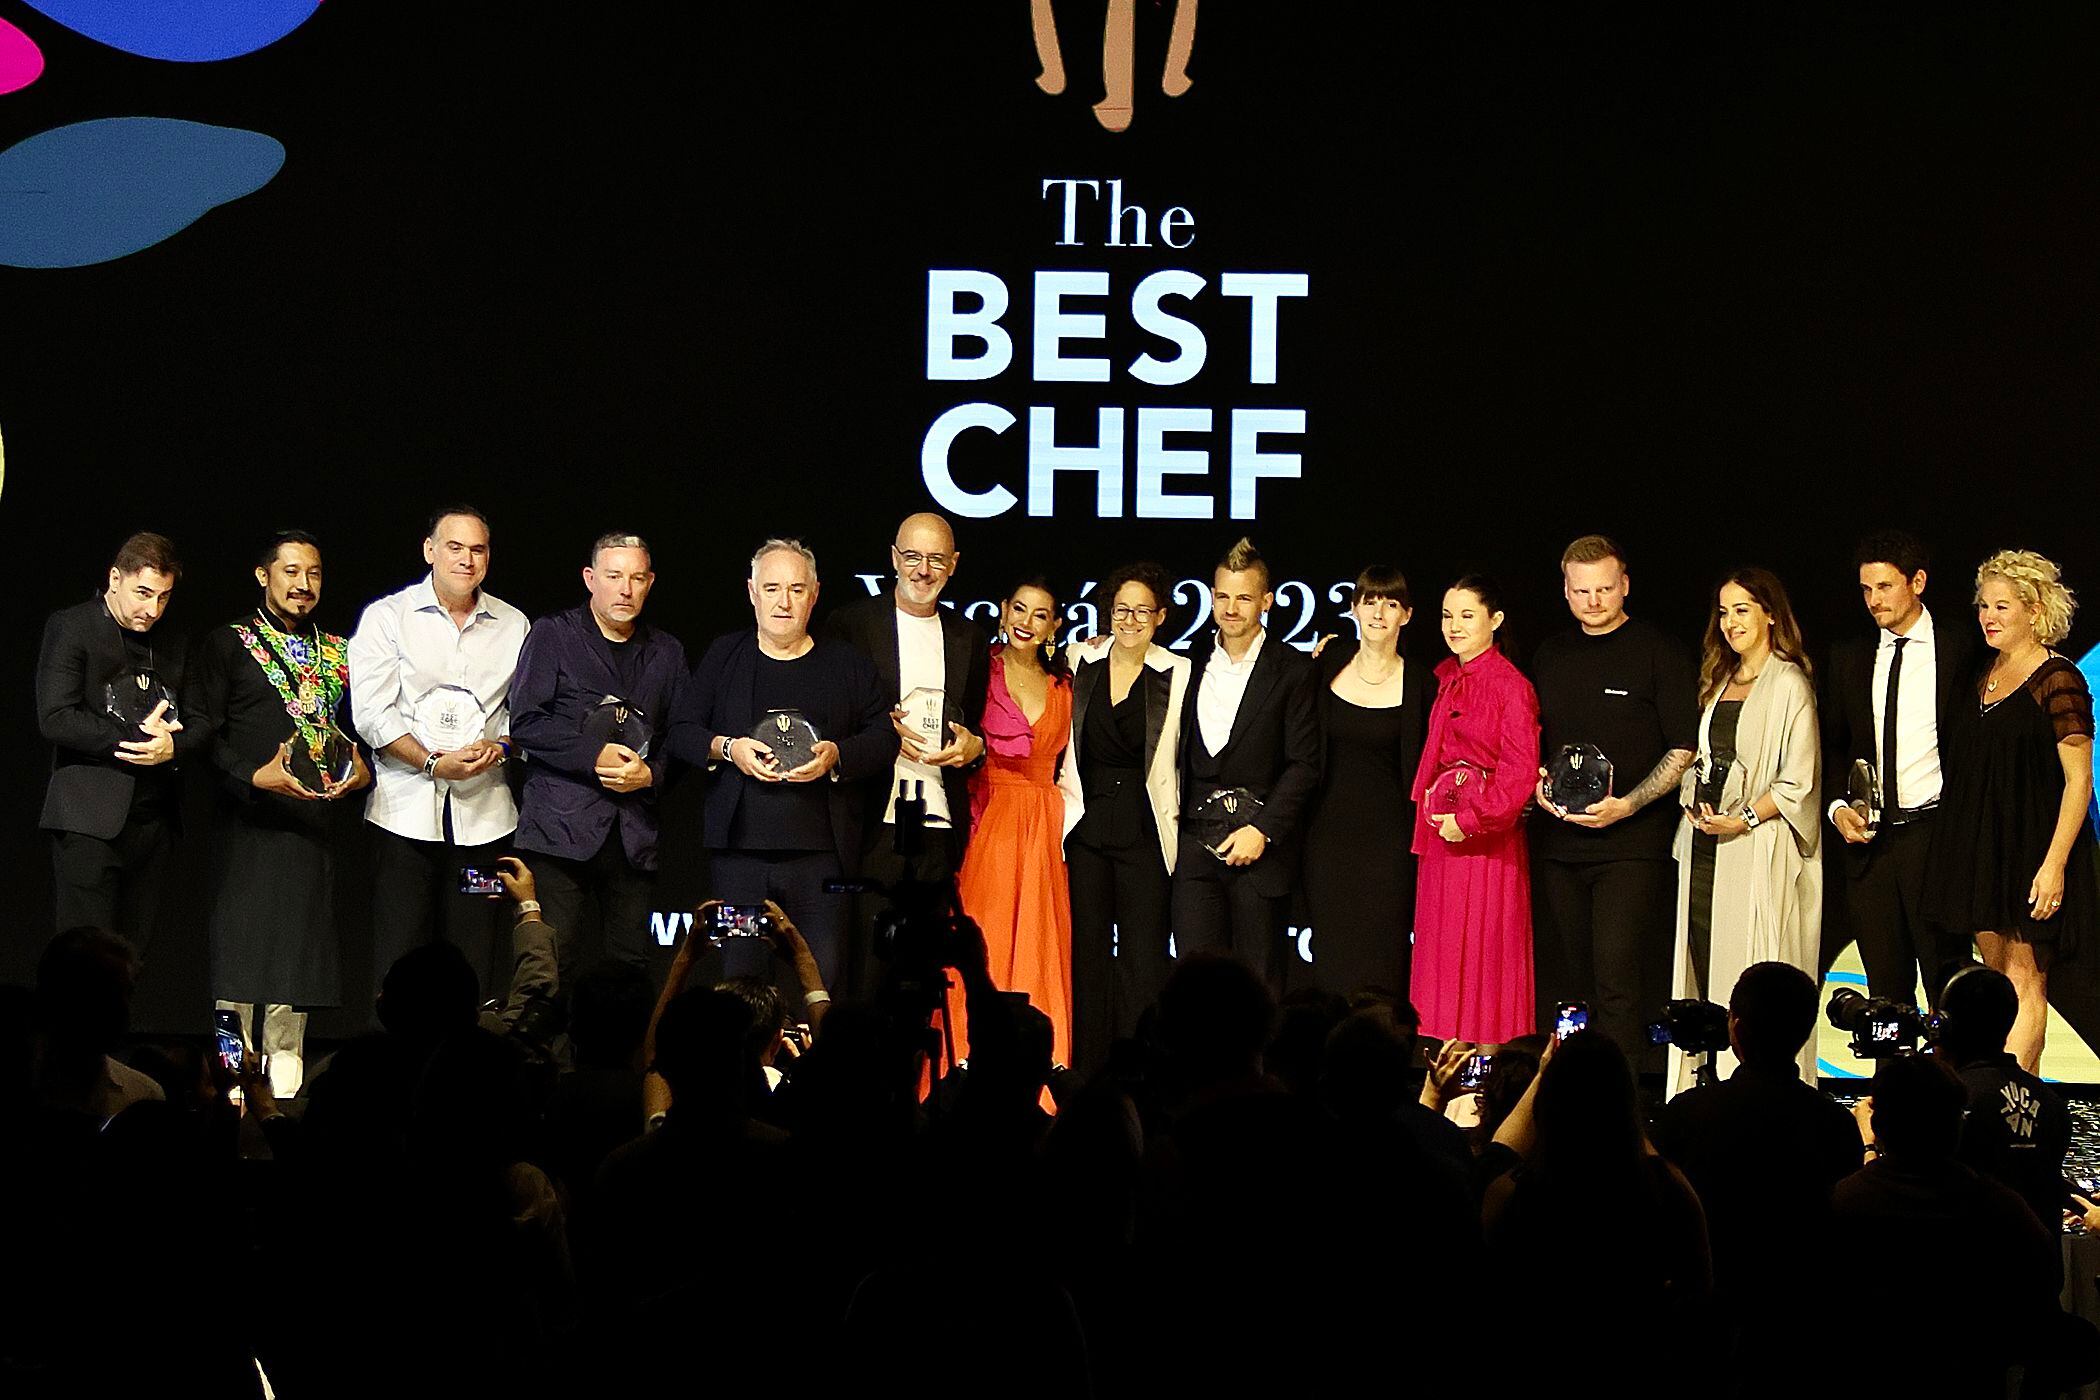 Dabiz Muñoz, rodeado de varios de los chefs premiados, entre los que se encuentran los hermanos Adrià, en la gala The Best Chefs Awards, celebrada en el Estado mexicano de Yucatán.